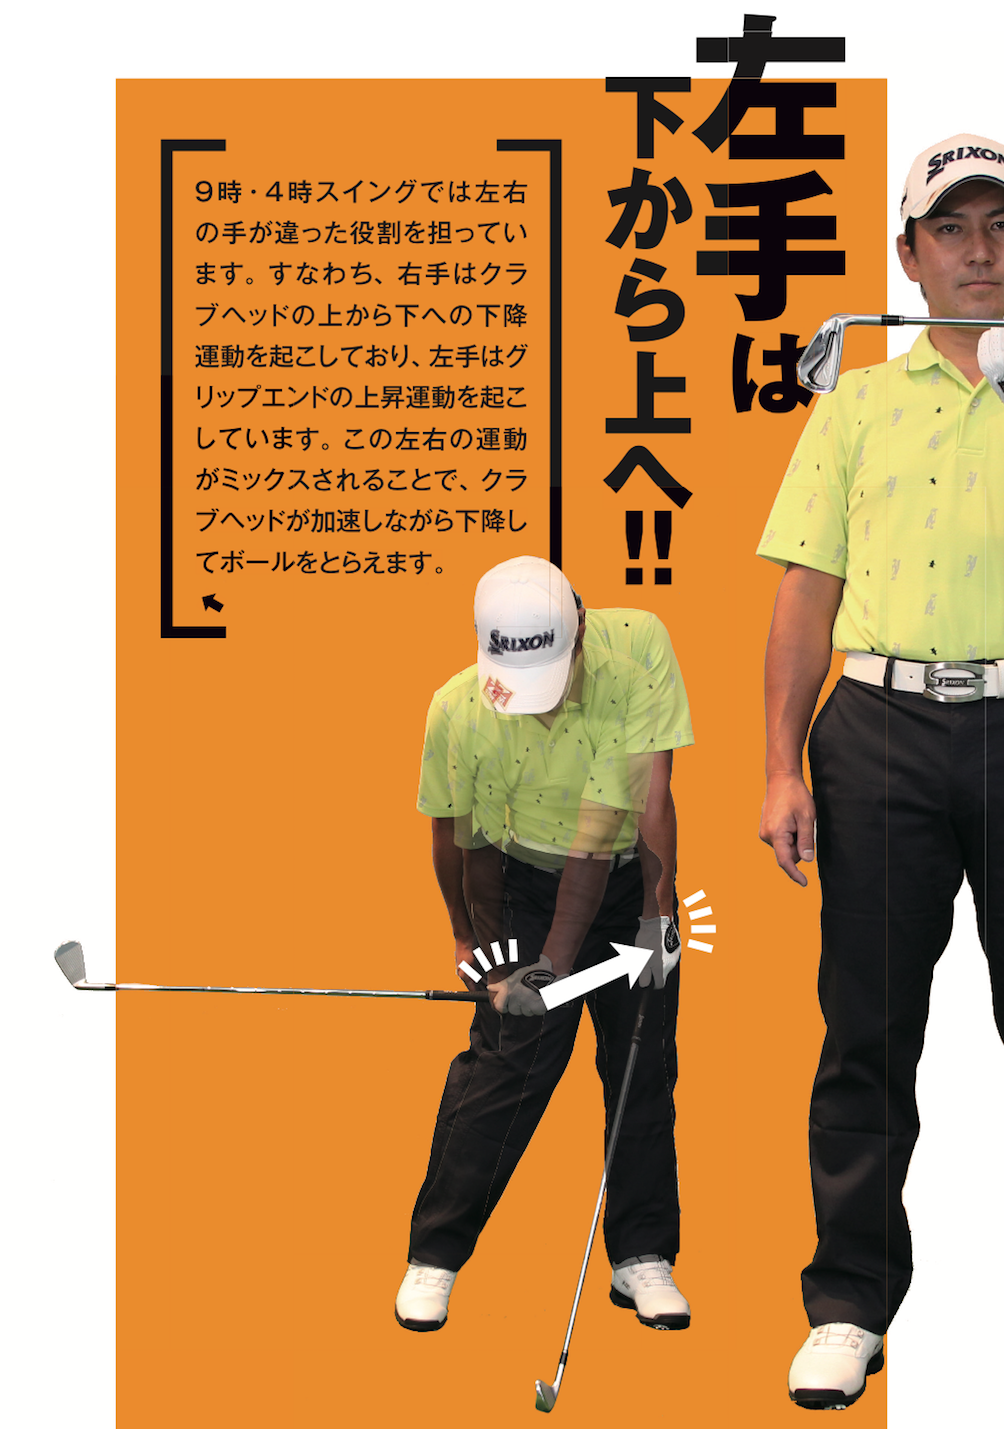 ゴルフレッスンを深読みする 阿河徹プロ (2) - 無料で読めるゴルフレッスンコミックWEB | 日本文芸社